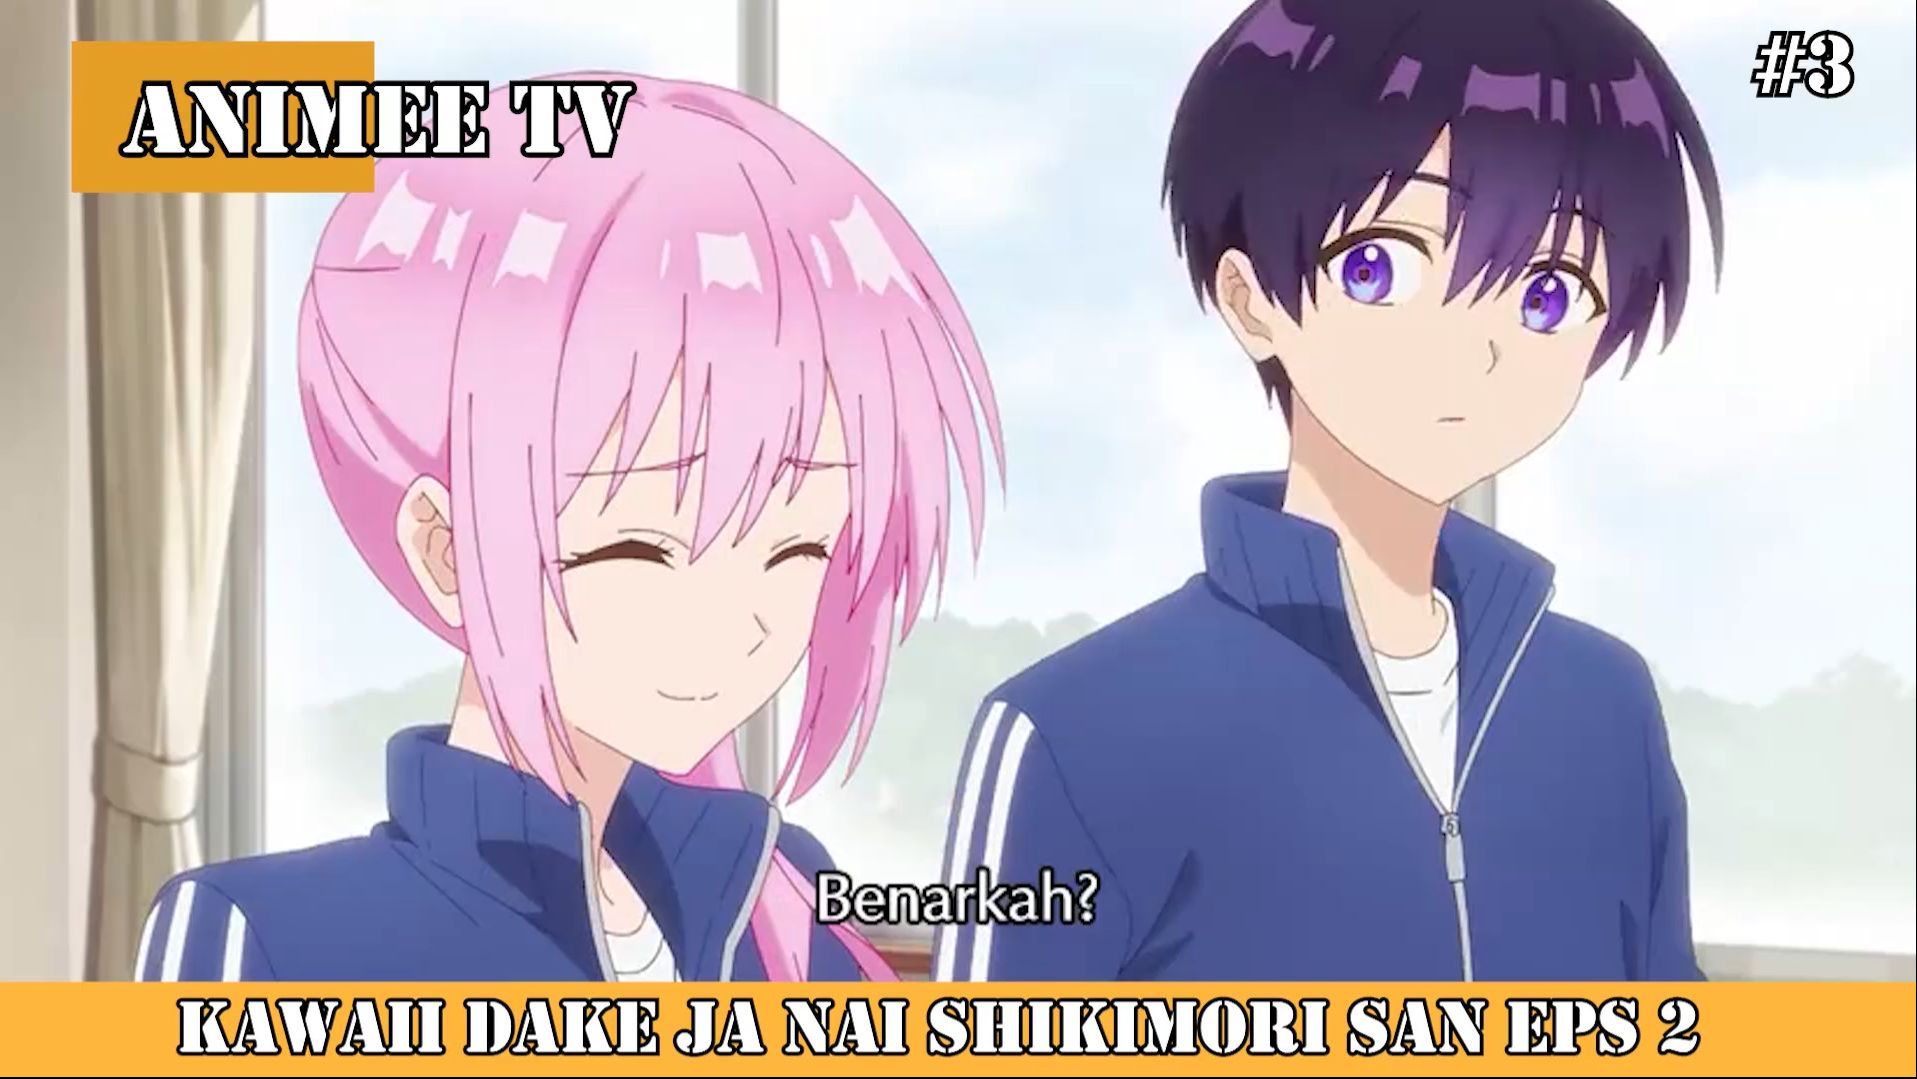 Shikimori's Not Just a Cutie - Episódio 1 (Dublado) 